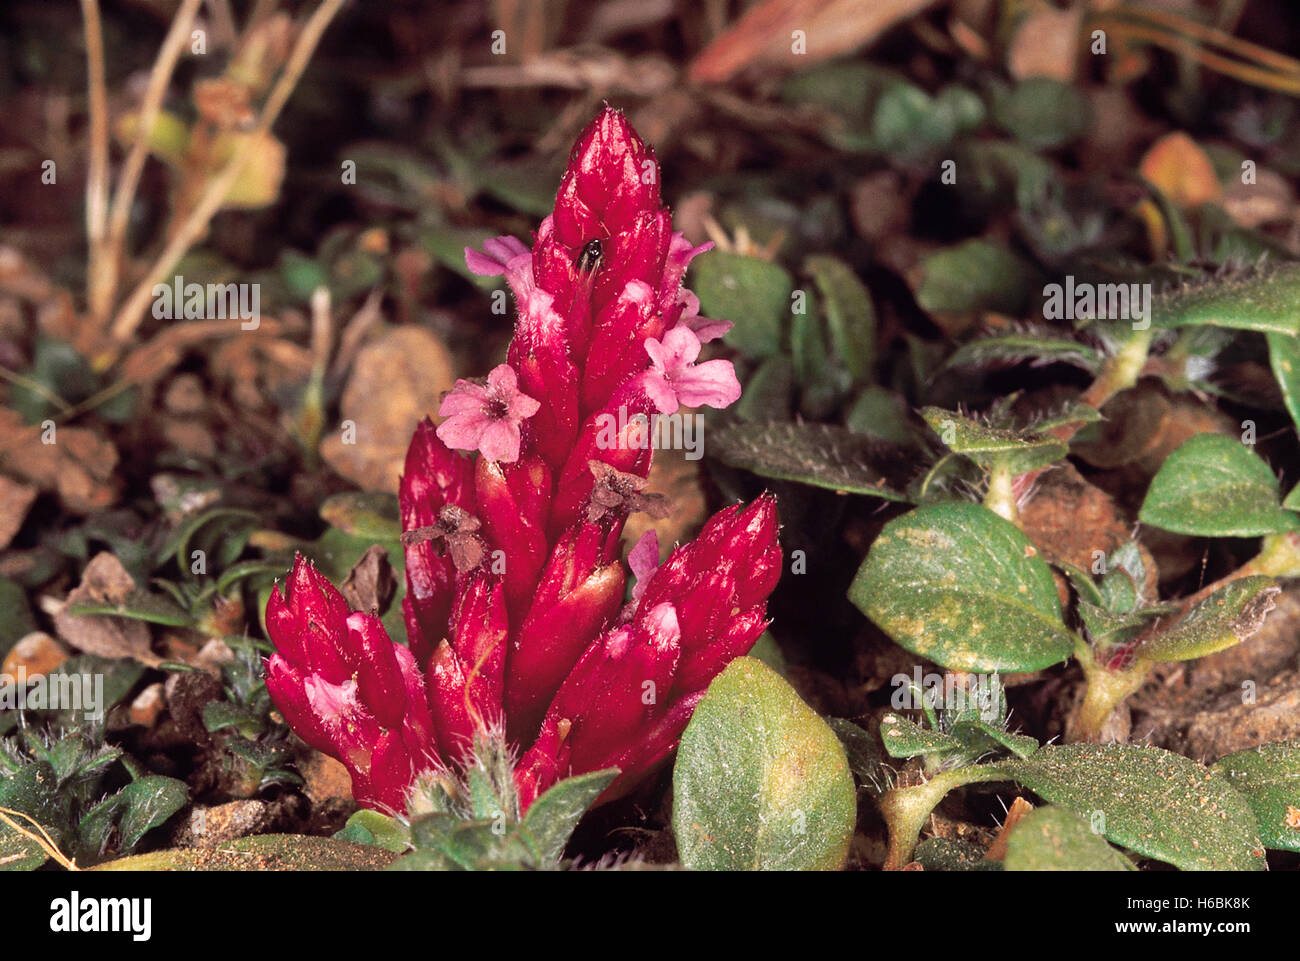 Striga gesnerioides. Familie: scrophularaceae. Ein root Parasit betrachtet wird. Nur wenn es Blumen. in der Regel im feuchten Gras gefunden Stockfoto